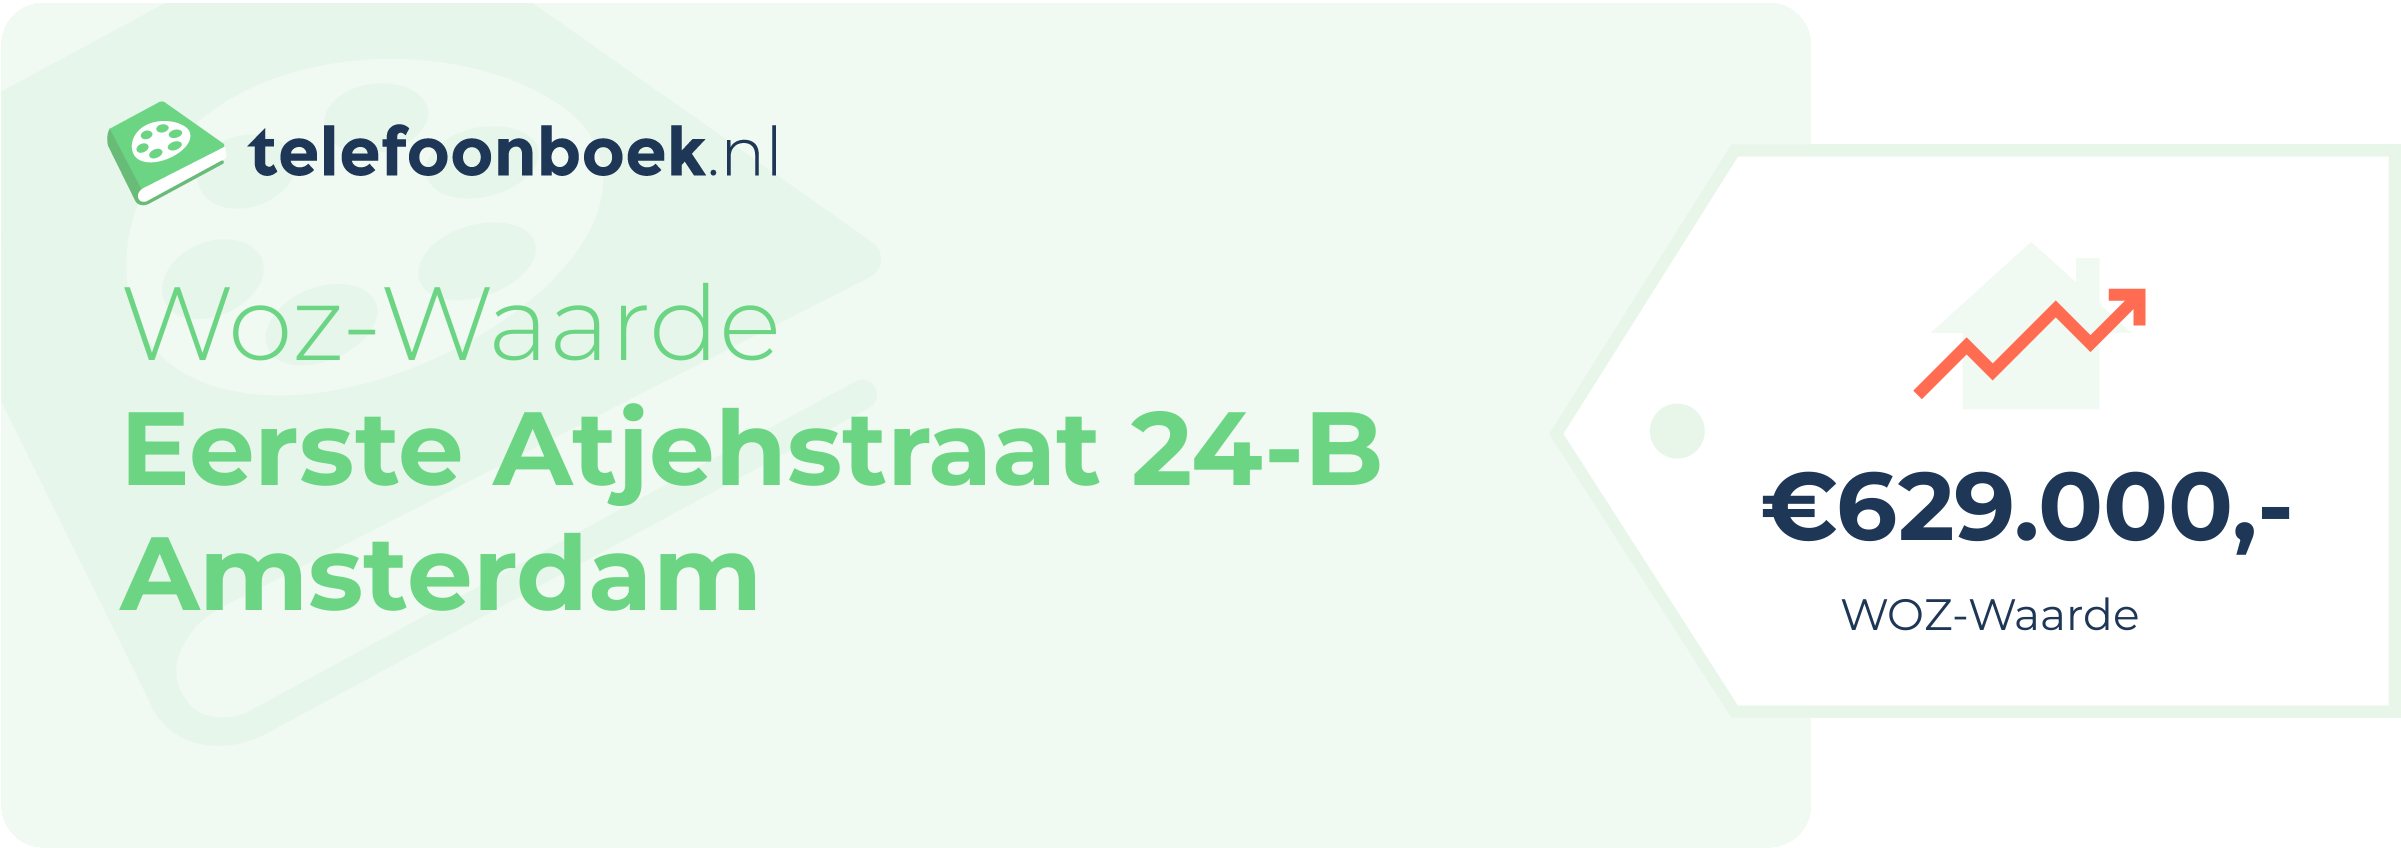 WOZ-waarde Eerste Atjehstraat 24-B Amsterdam